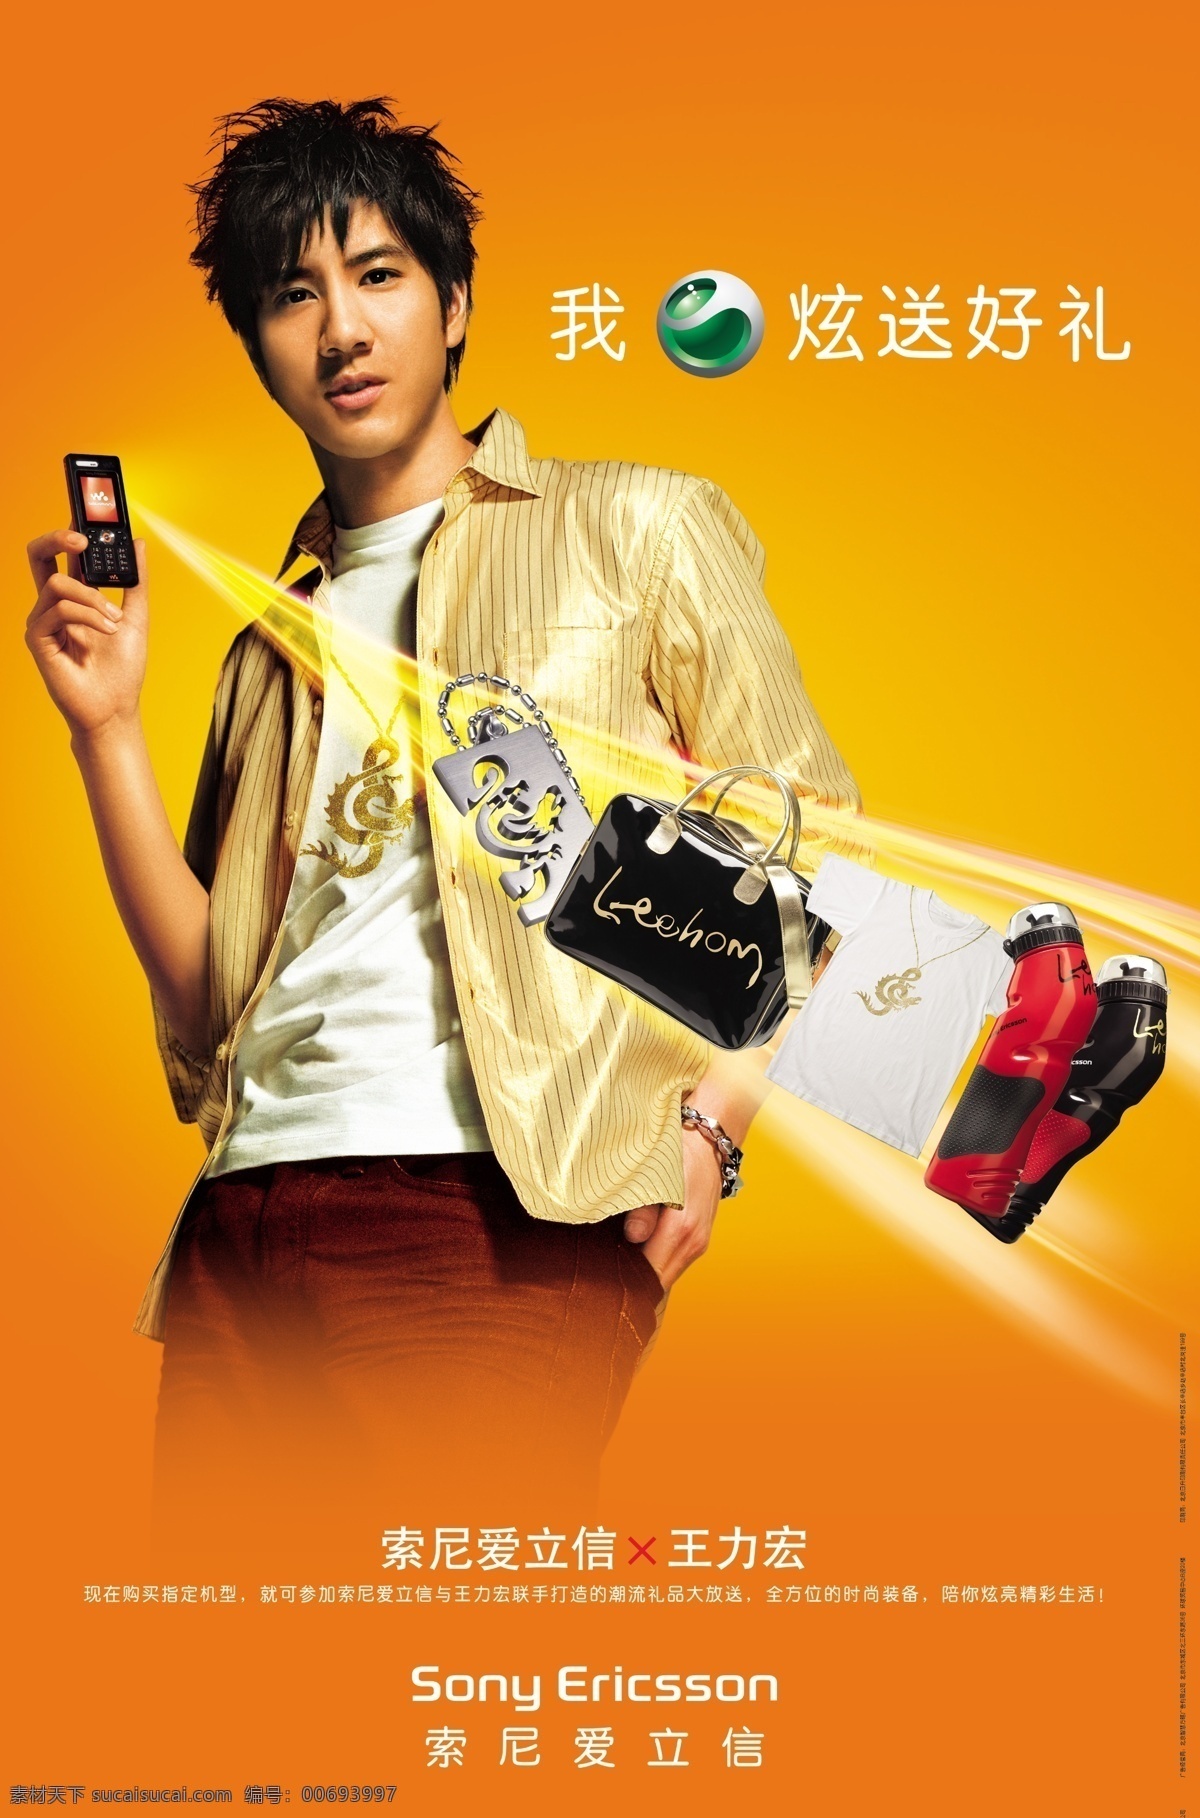 王力宏 索尼 爱立信 手机 广告 条纹黄衬衫 棕裤 右手拿手机 橙色